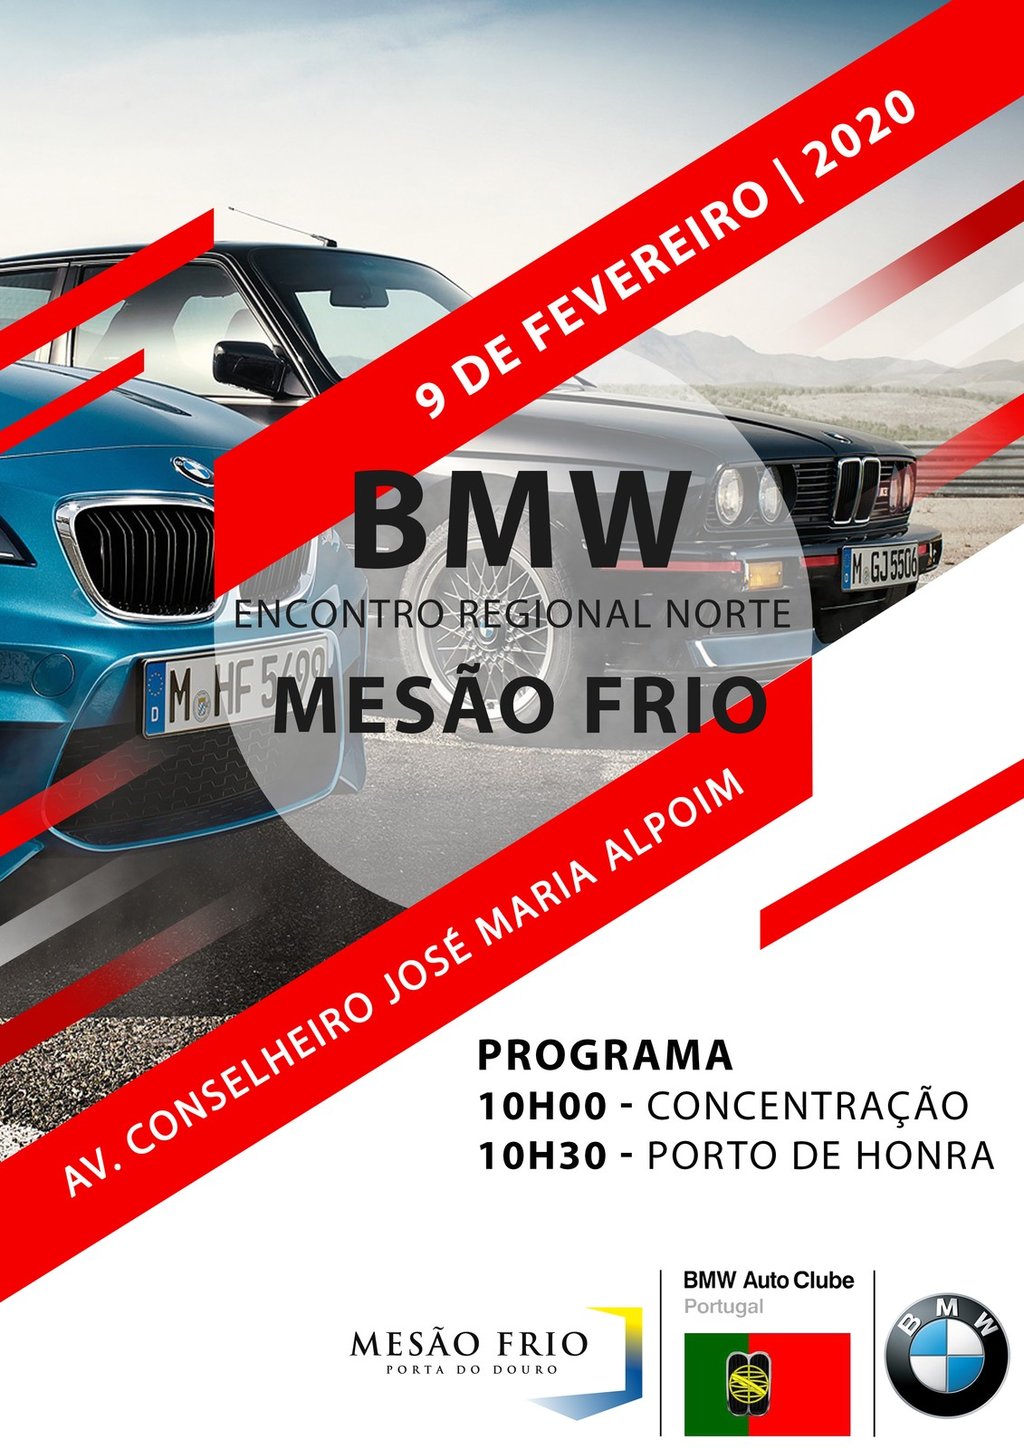 BMW ENCONTRO REGIONAL NORTE MESÃO FRIO 